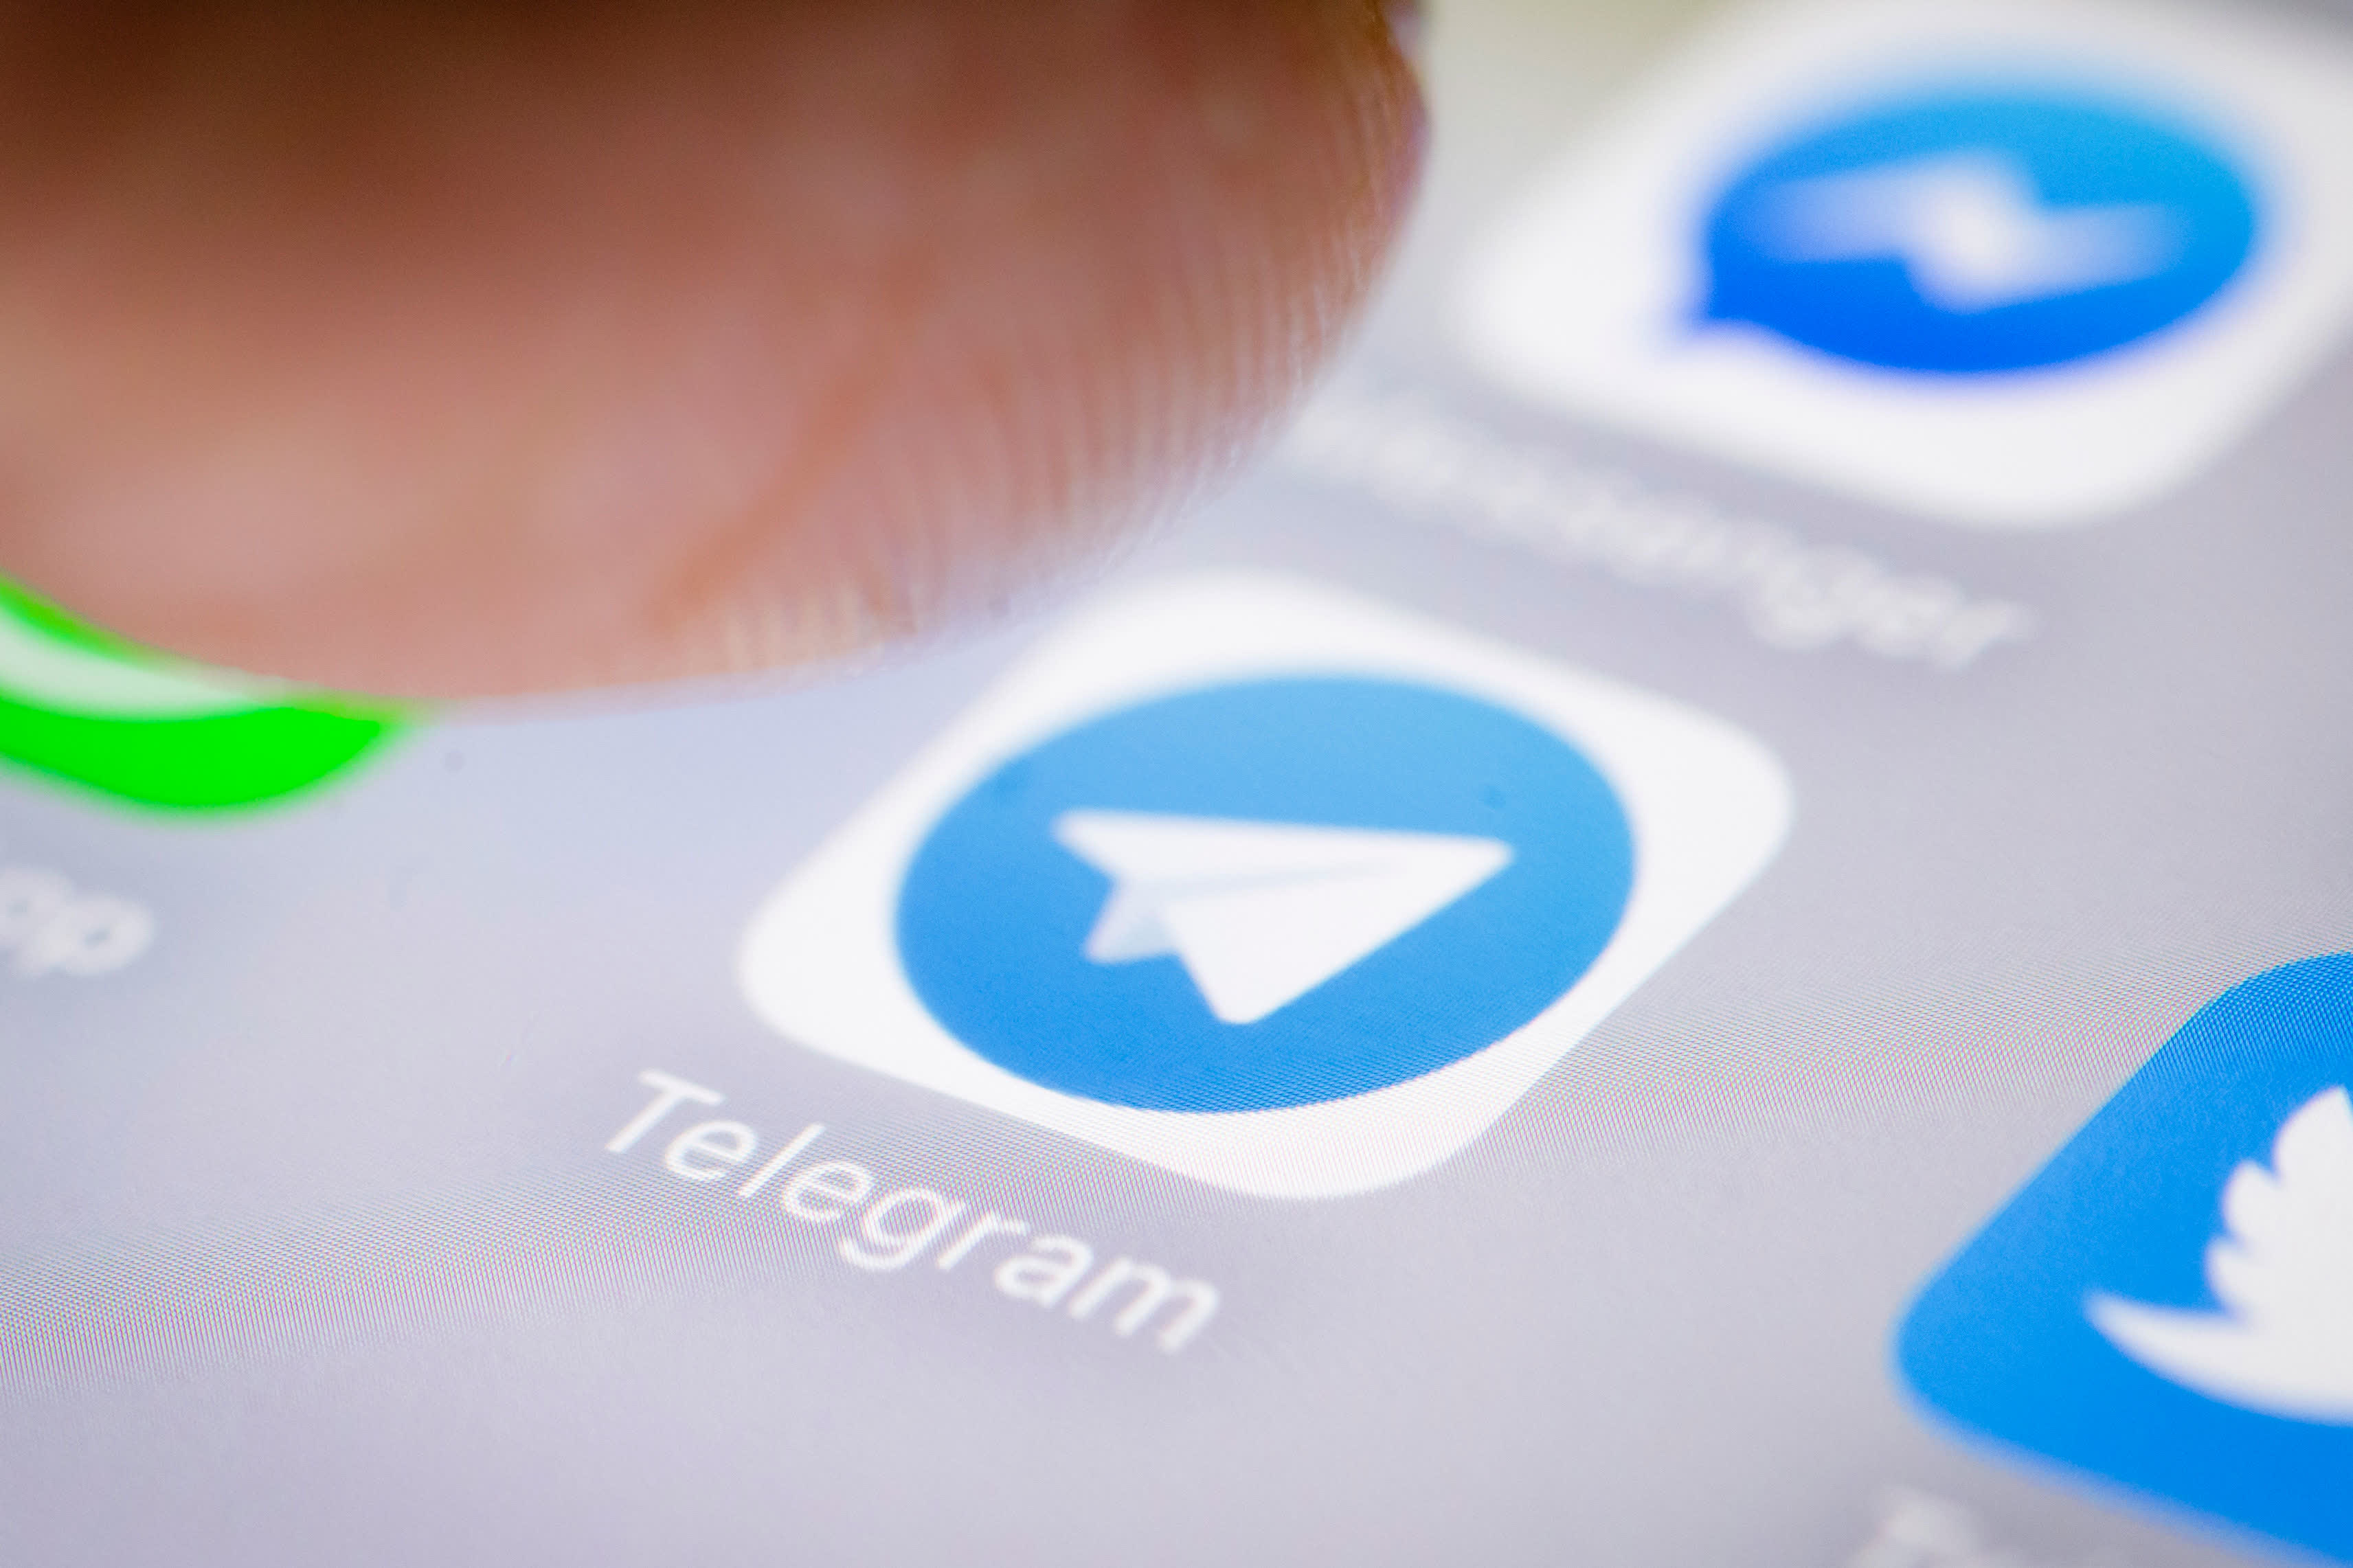 بهترین روش تبلیغات در تلگرام چیست؟ - راهنماي تبليغات موثر در تلگرام